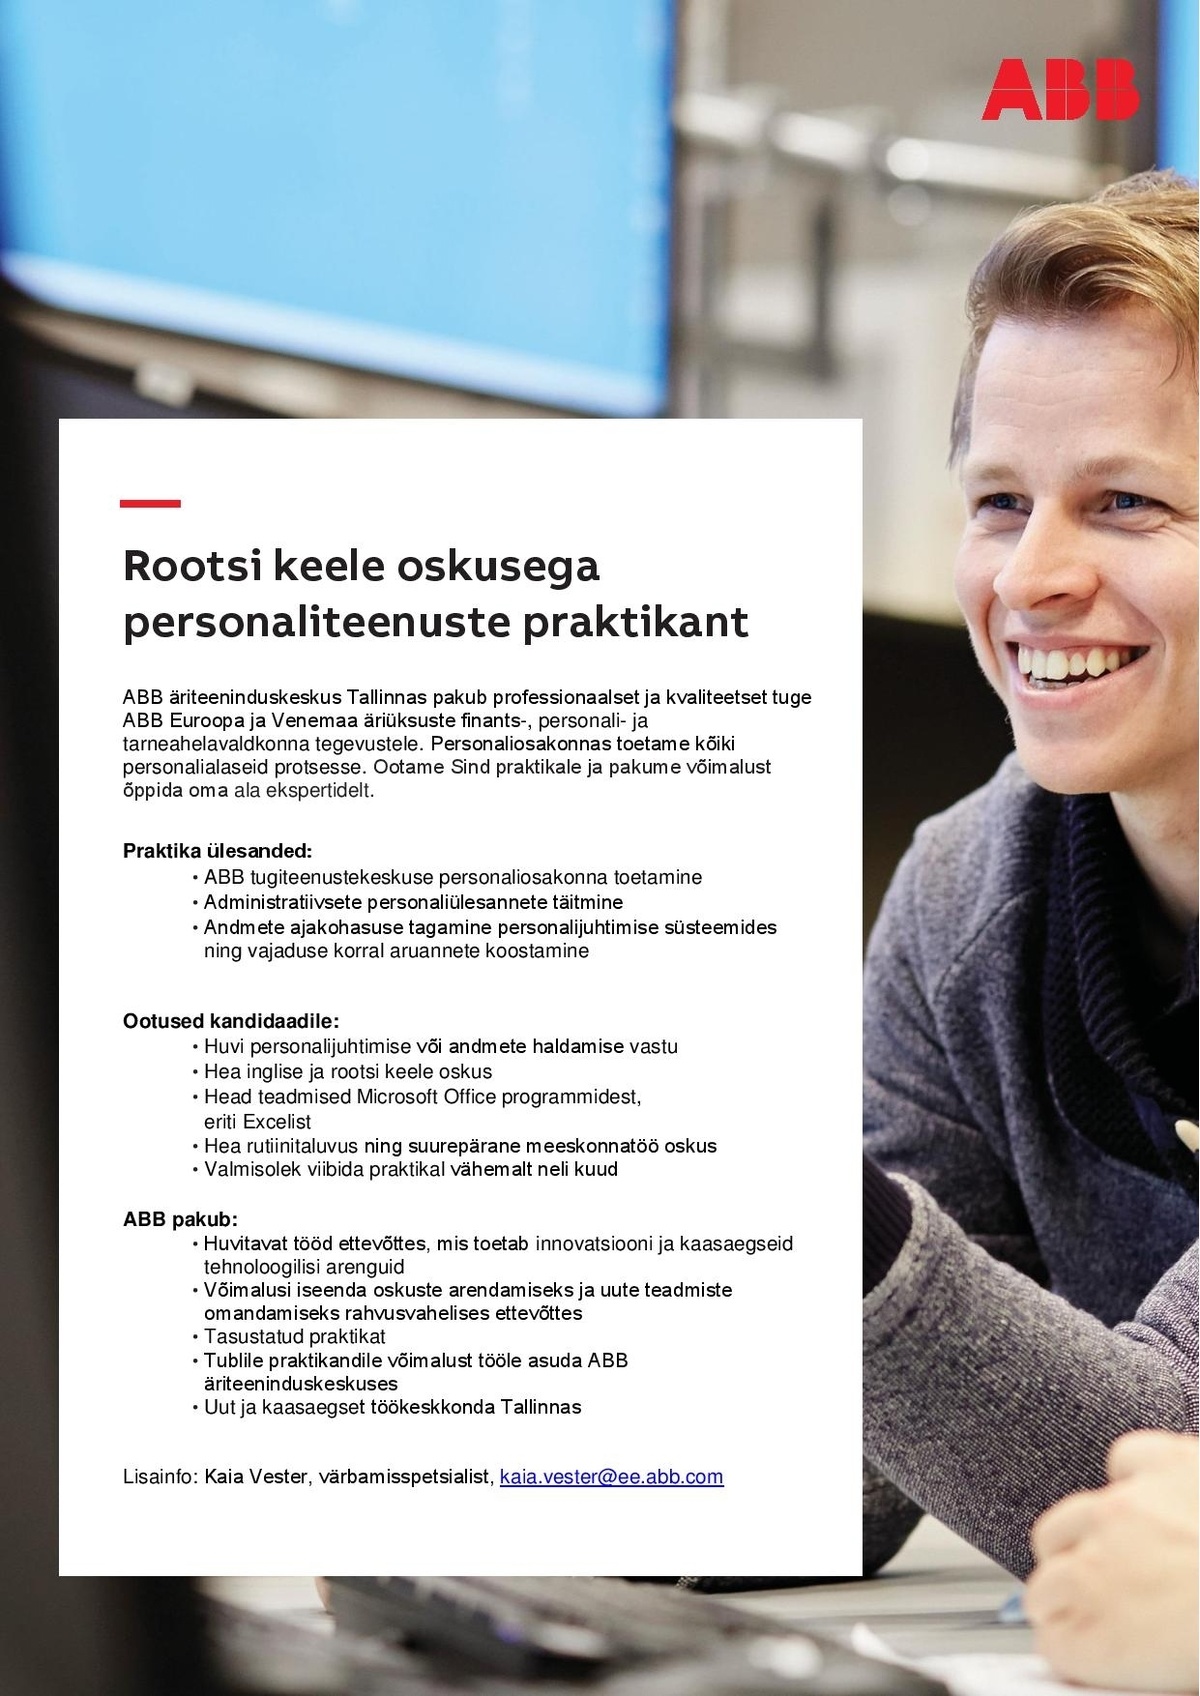 ABB AS Rootsi keele oskusega personaliteenuste praktikant